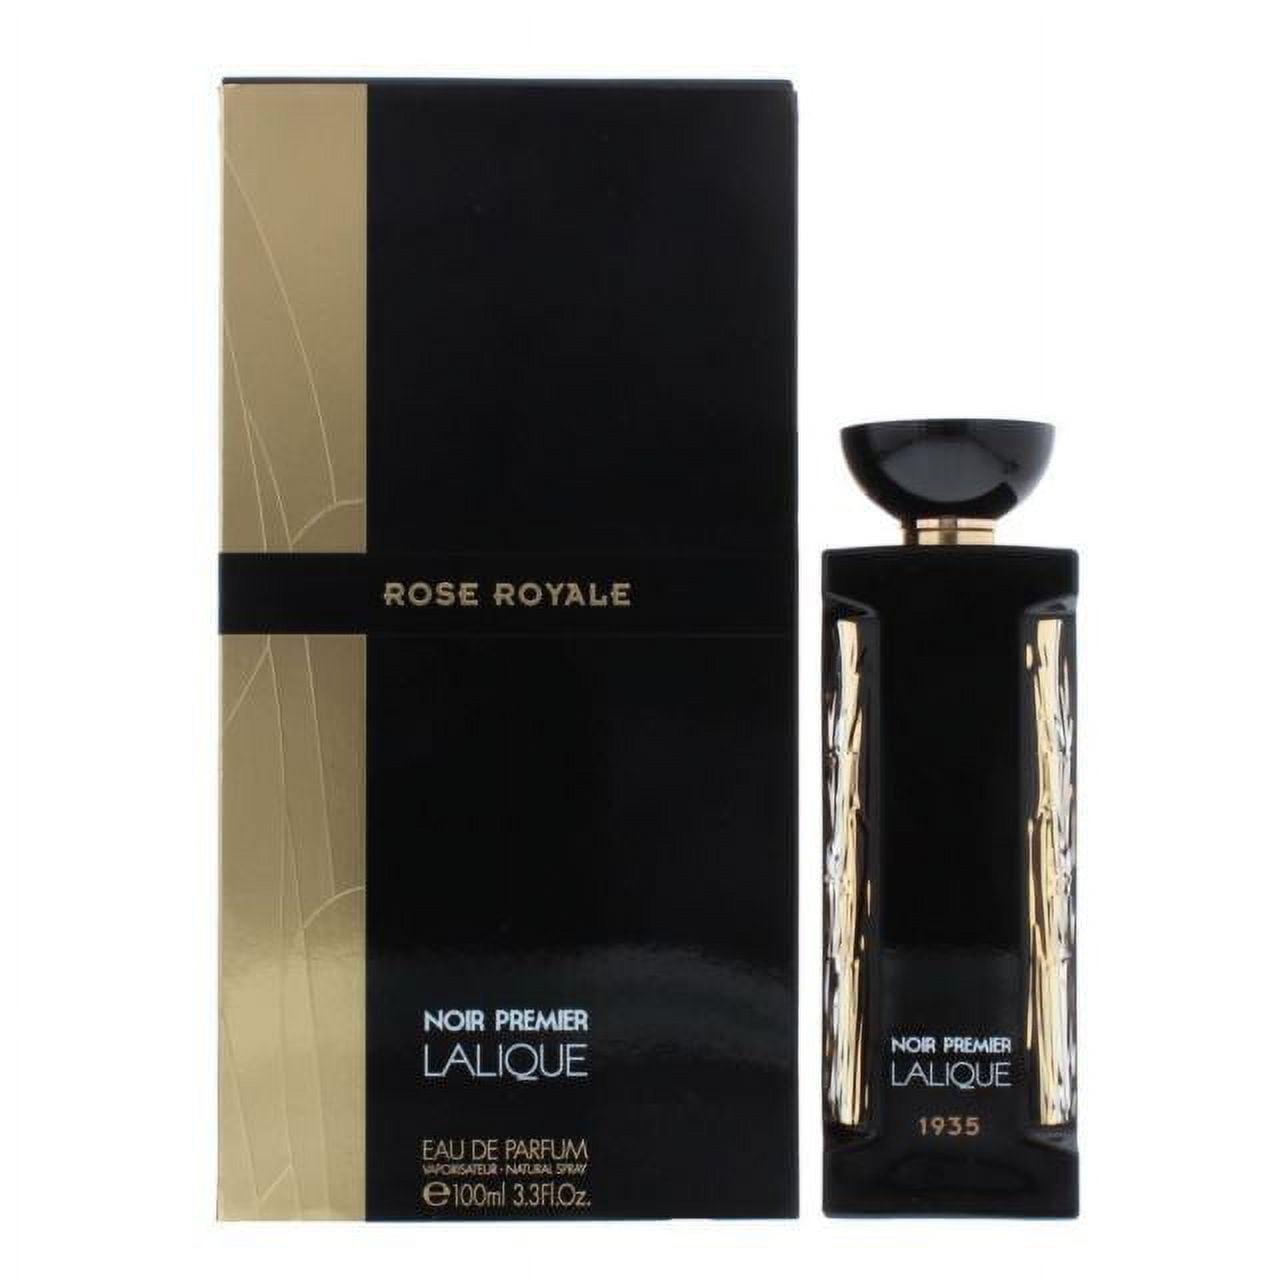 Rose Royale Eau de Parfum Spray by Lalique - 3.3 oz